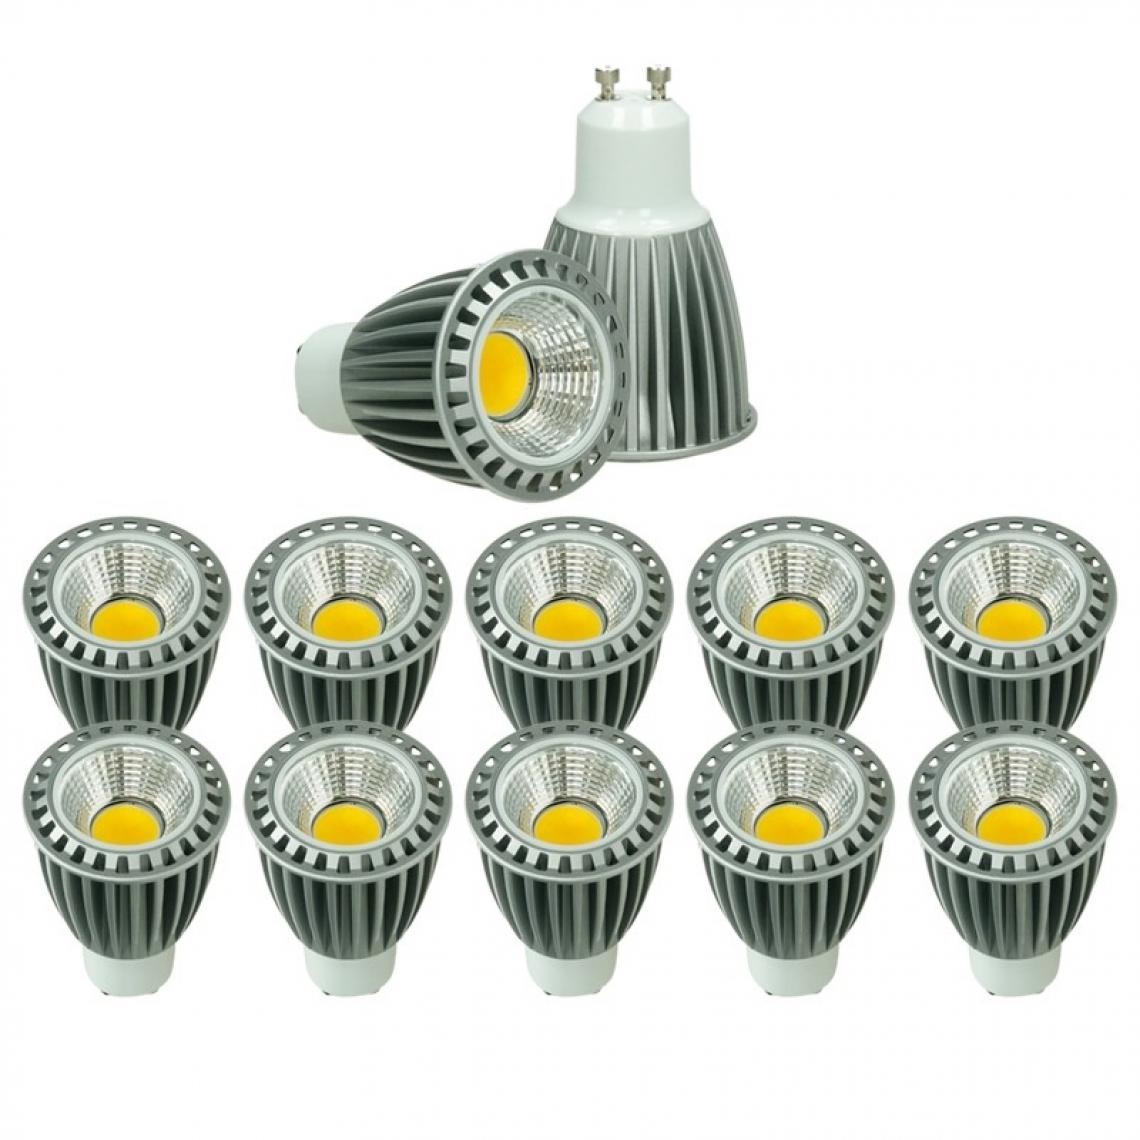 Ecd Germany - ECD Germany 10 x GU10 COB Spot 9W Haute-Puissance Lampe d'économie d'énergie d'environ 552 lumens remplace 60W Lampe halogène 60 degrés angle Blanc Neutre 4000K - Ampoules LED